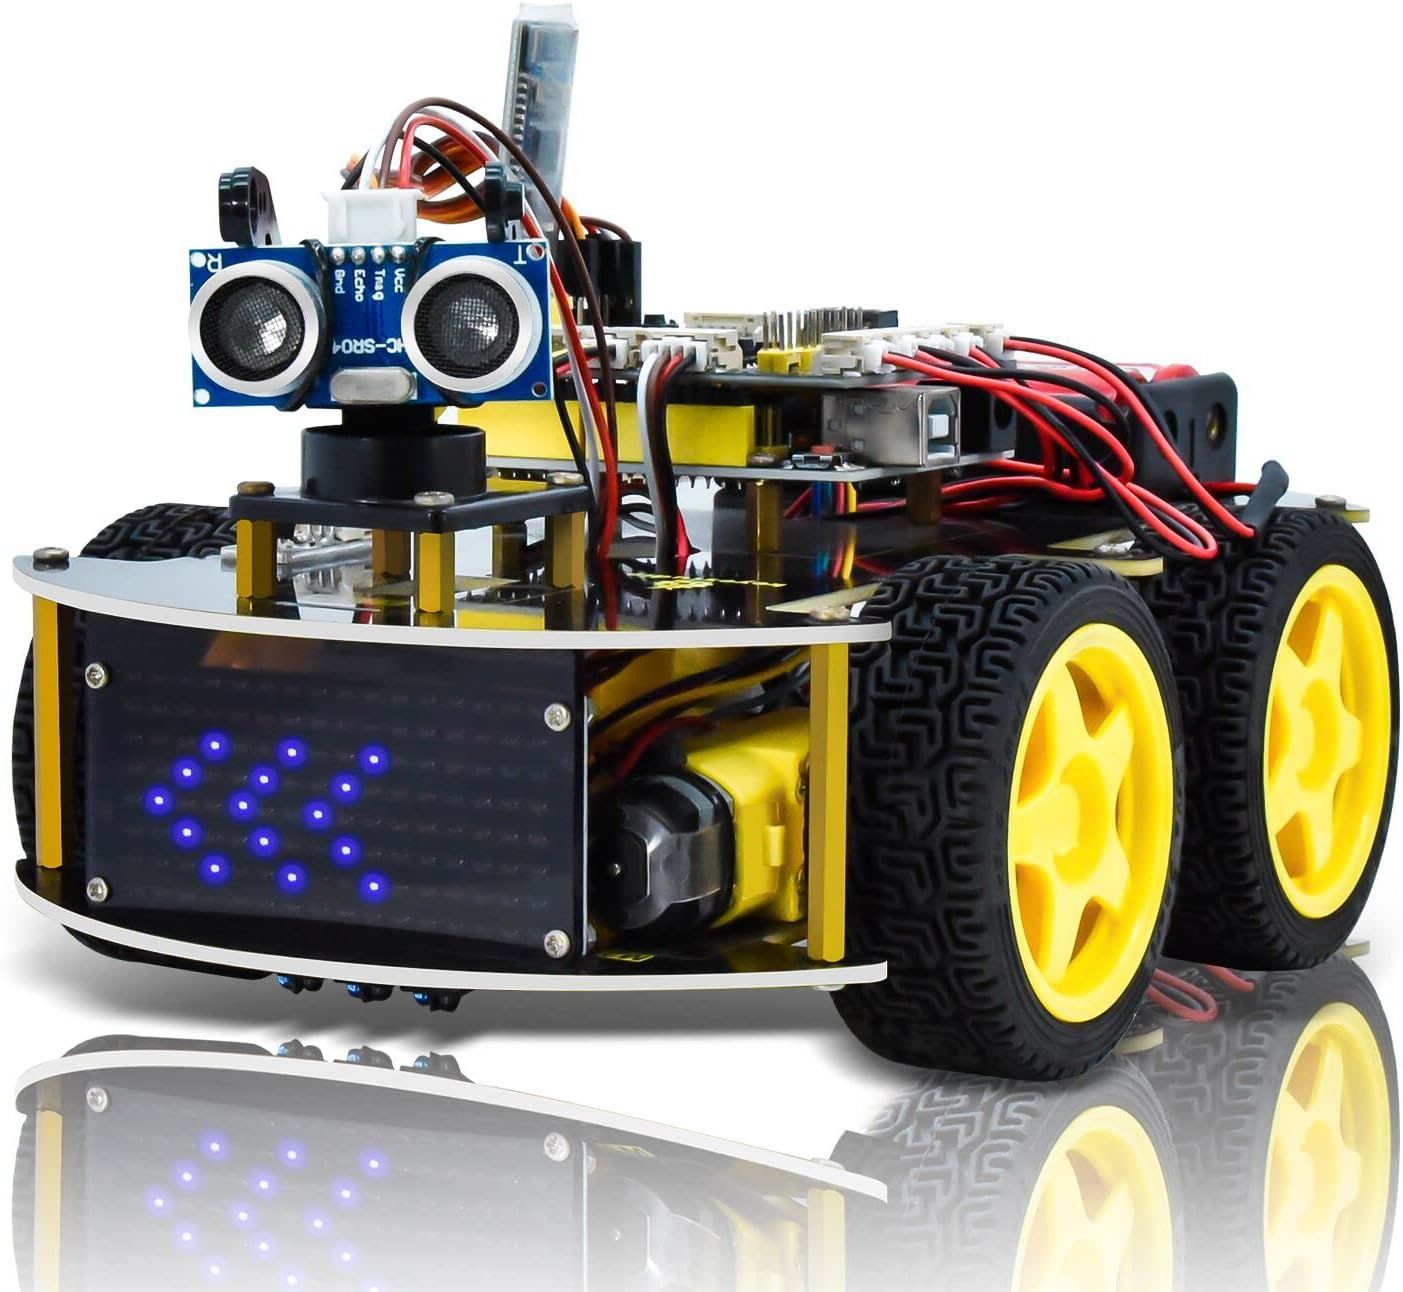 KEYESTUDIO Akıllı Araba Robotu, 4WD Programlanabilir DIY Başlangıç Kiti